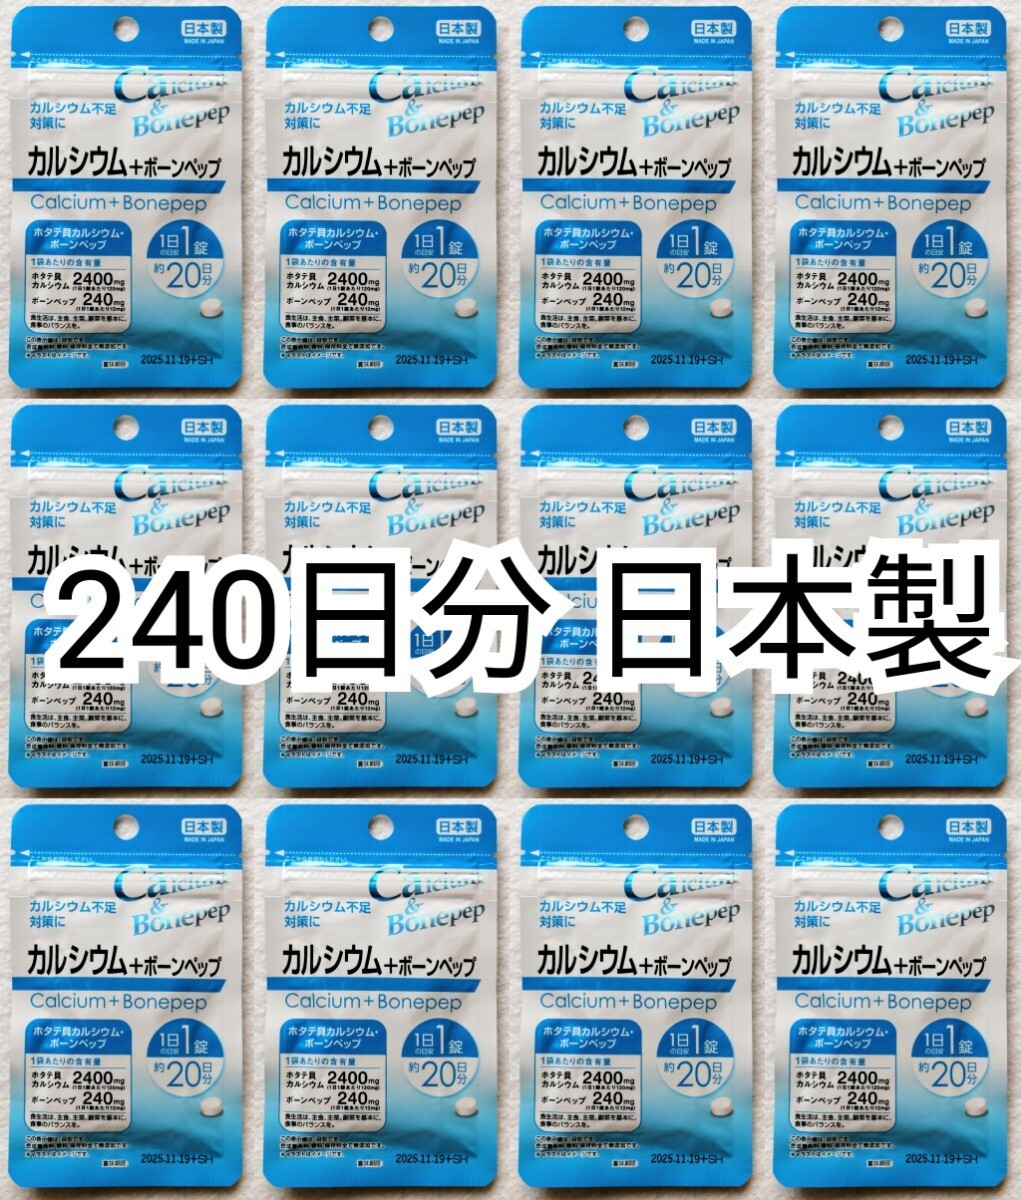 ... название   отправка  кальций +...×12 мешок 240 число ...240...(240 зёрнышко )  сделано в Японии  нет  ...(...)... товар  ...   ...       есть  ...